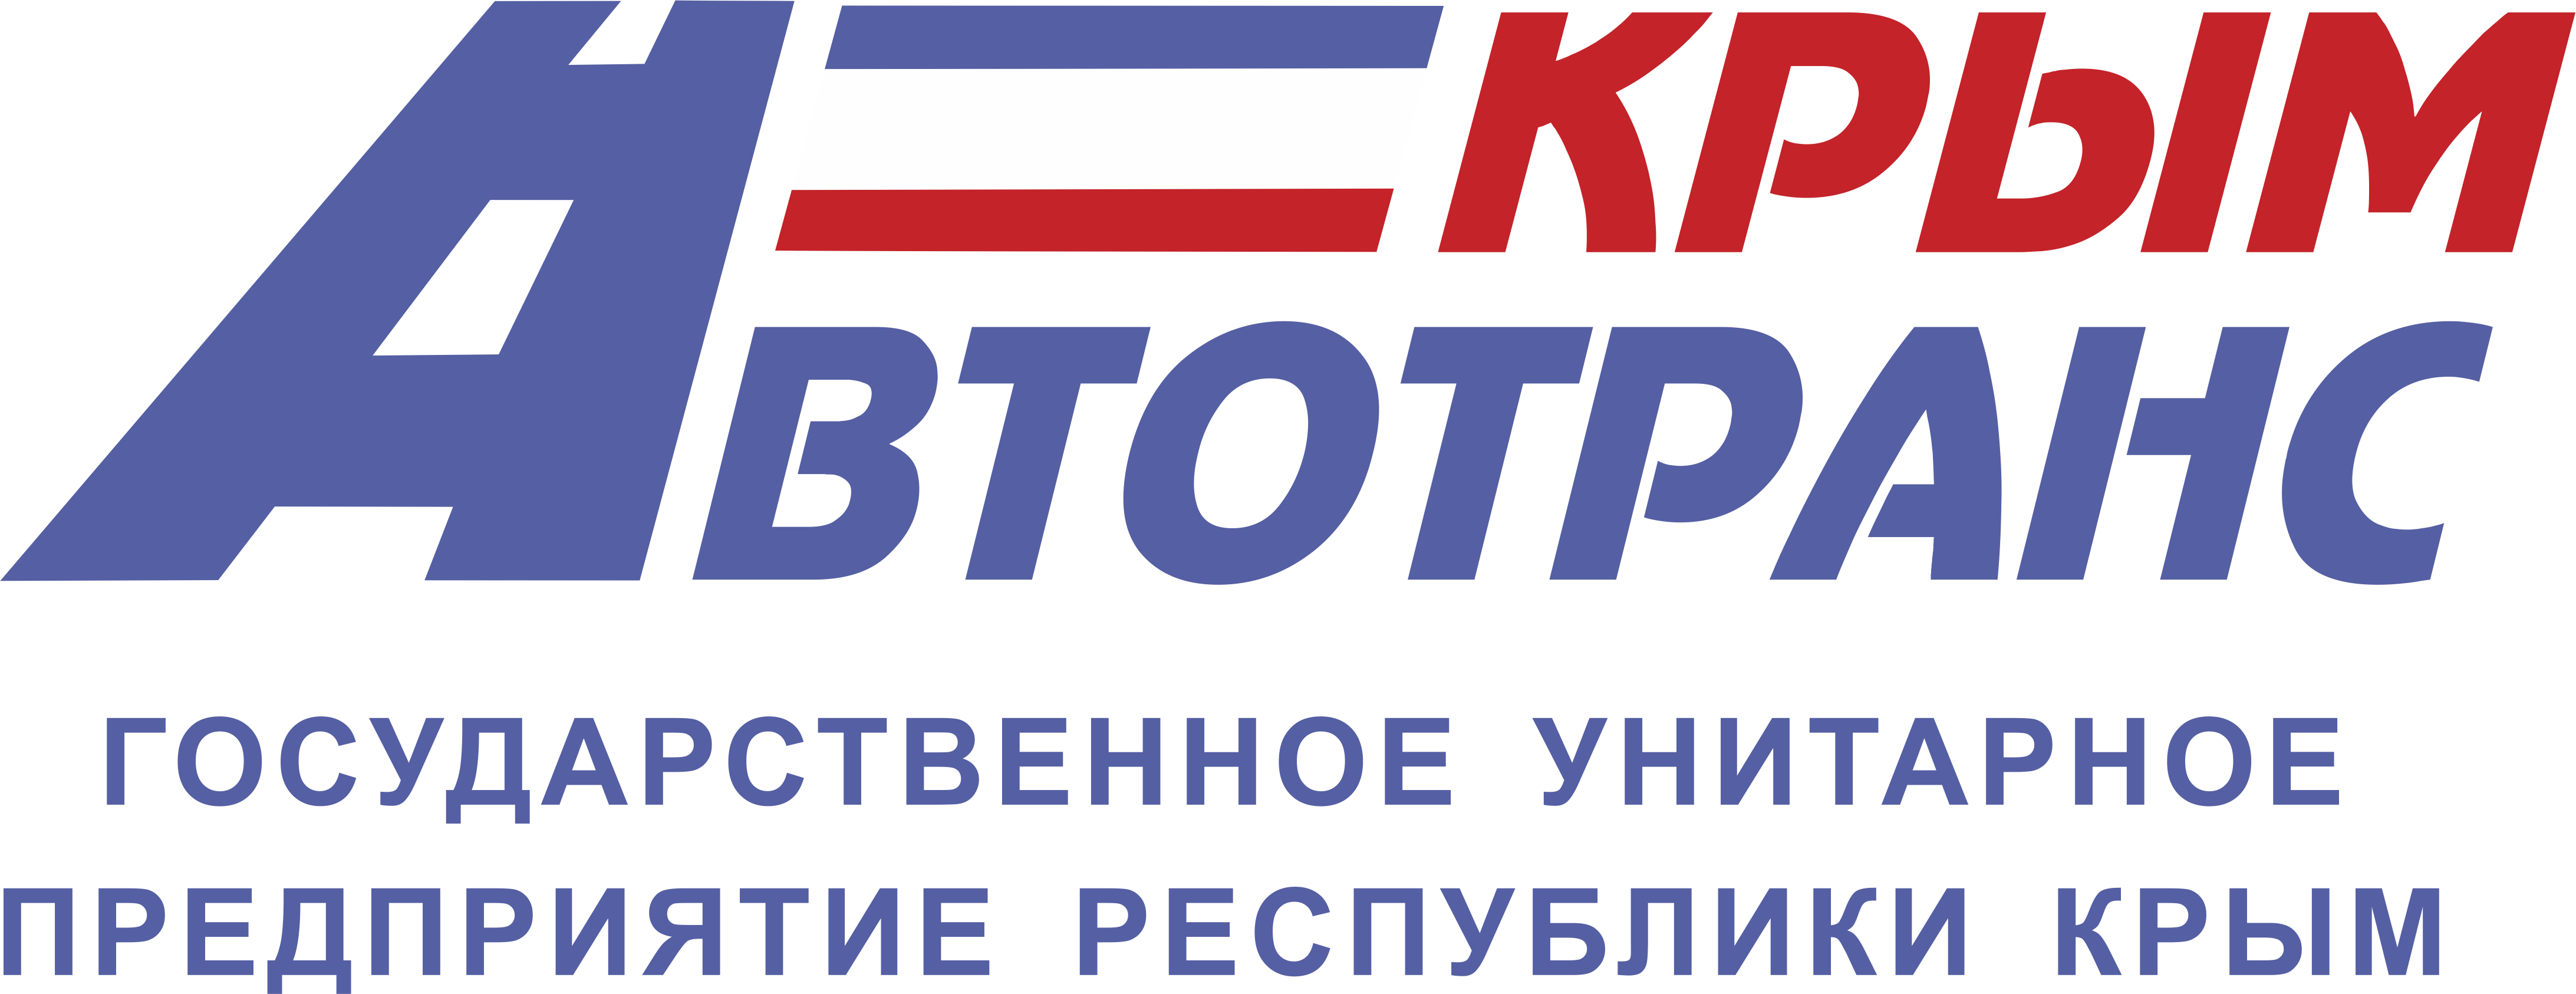 ГУП РК Крымавтотранс